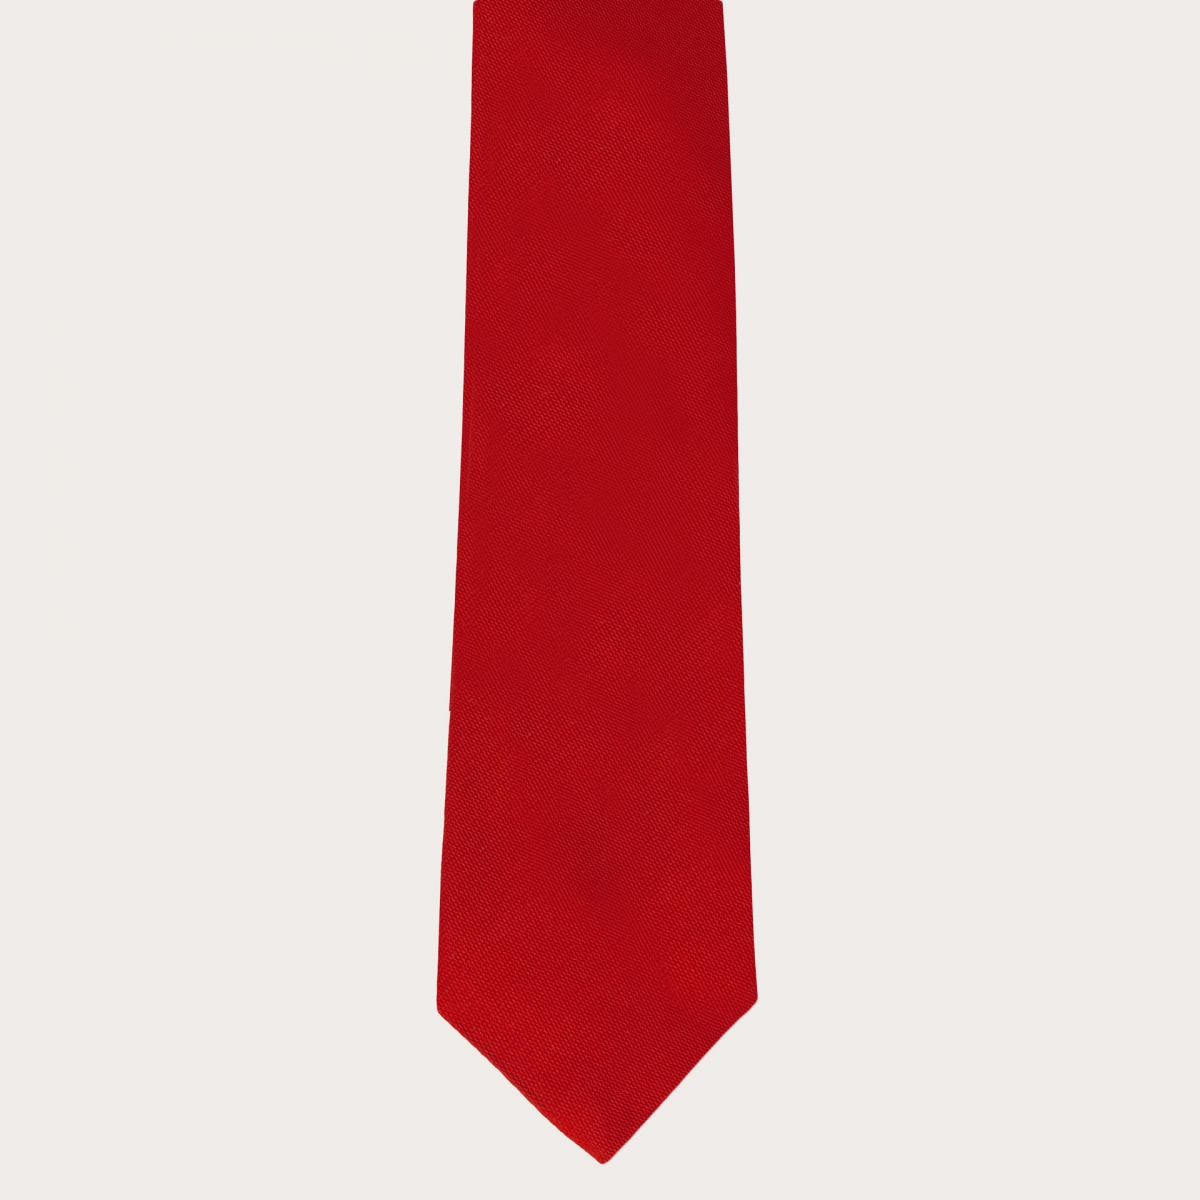 Brucle cravate rouge jacquard en soie